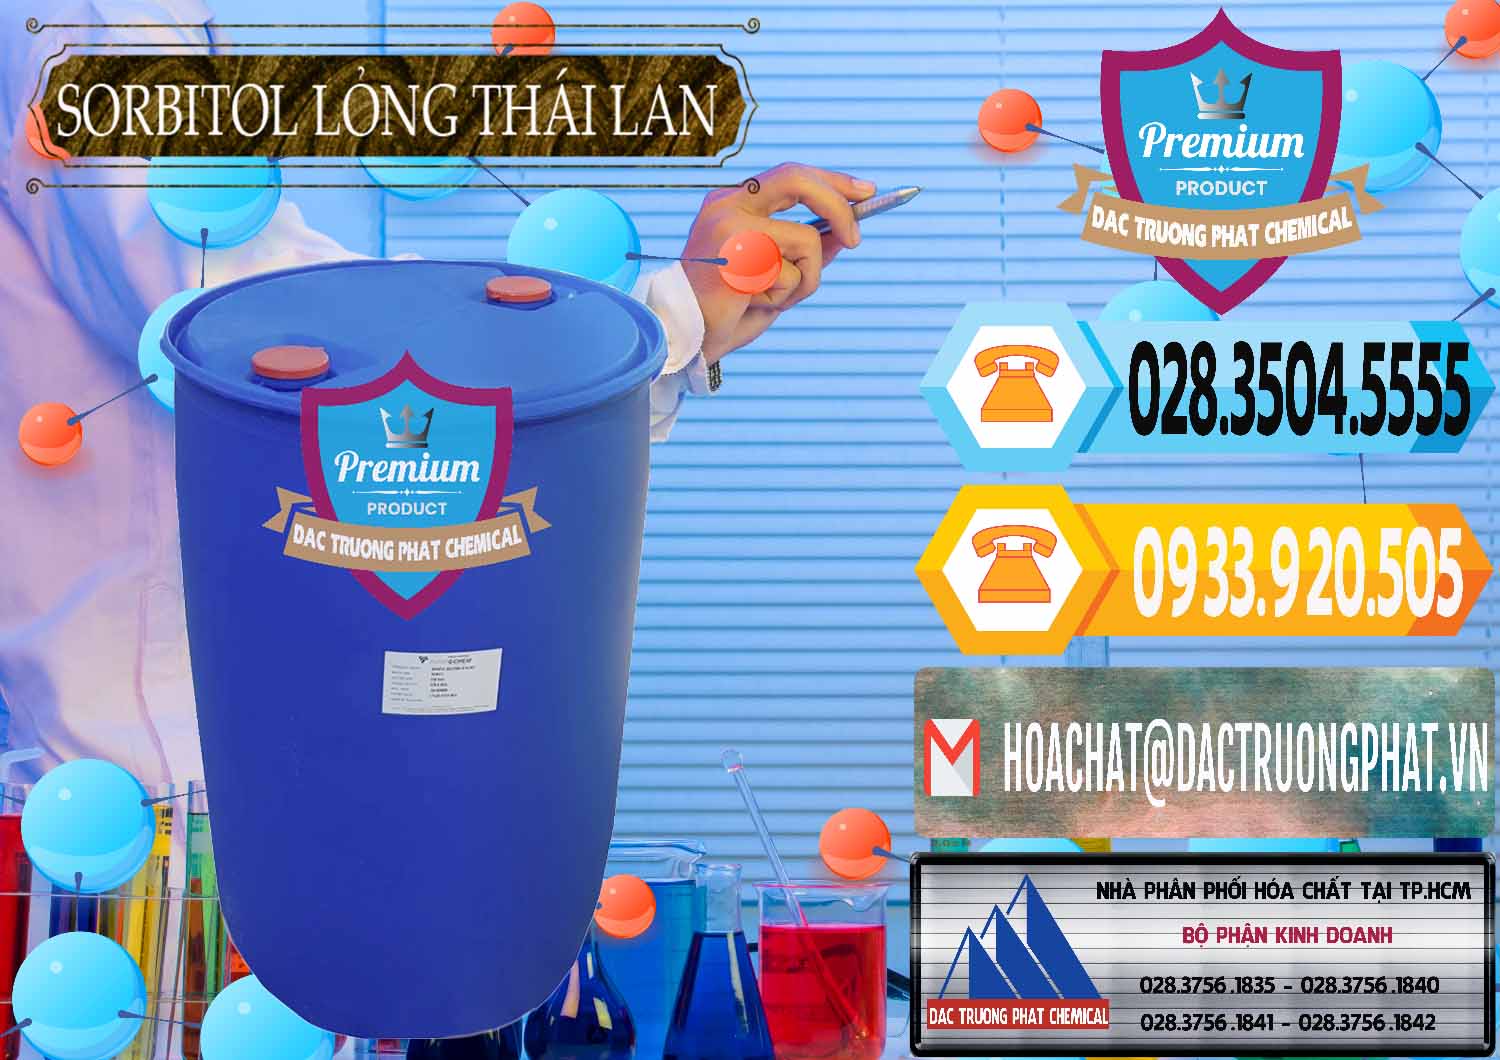 Cty chuyên cung cấp ( bán ) Sorbitol - C6H14O6 Lỏng 70% Food Grade Thái Lan Thailand - 0341 - Cty kinh doanh ( phân phối ) hóa chất tại TP.HCM - hoachattayrua.net